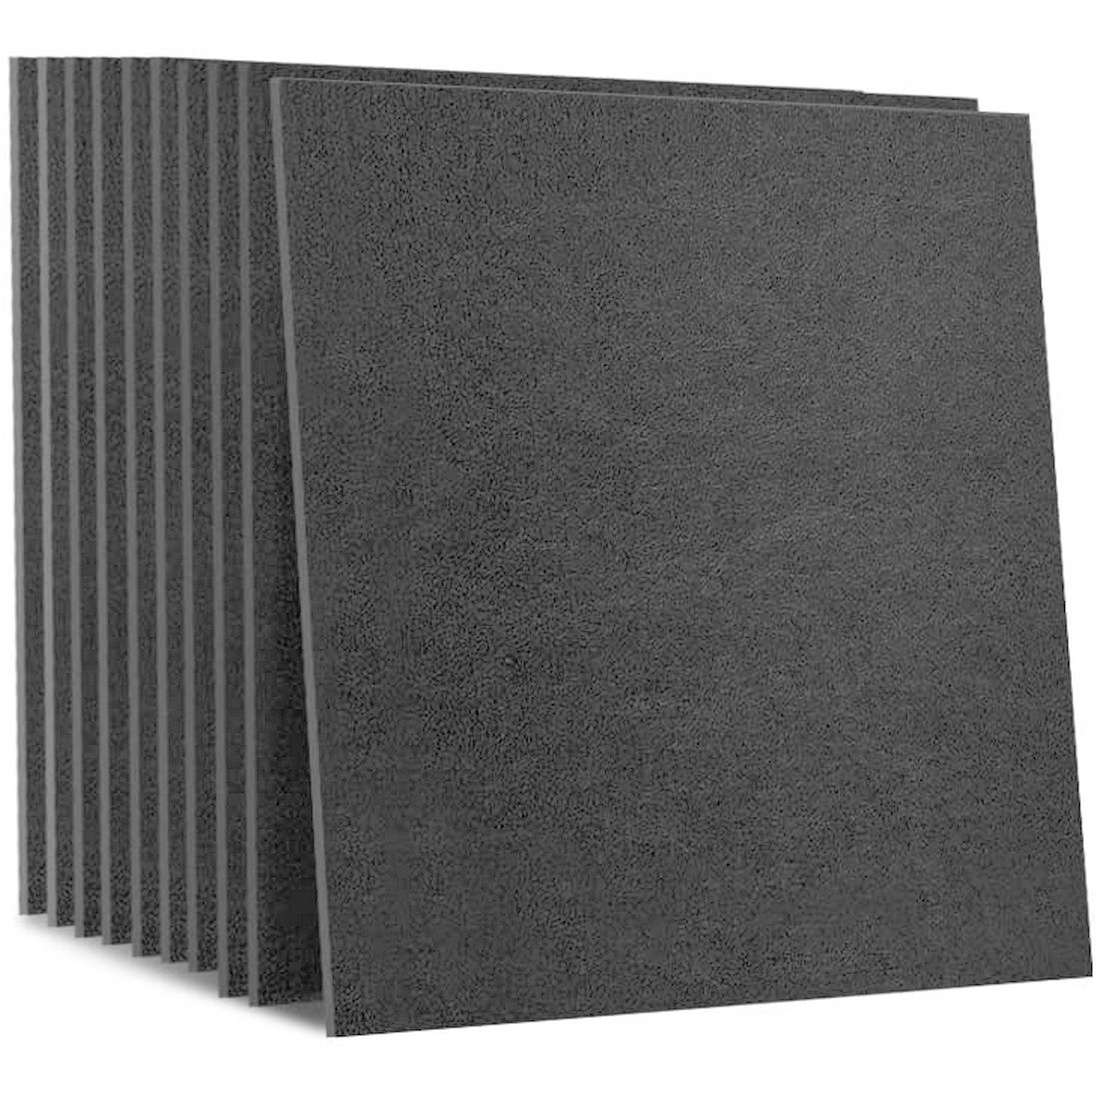  звукоизоляционный материал звукопоглощающий панель звукопоглощающий сиденье 10 шт. комплект 60*60cm толщина 0.9cm звукоизоляционный лист твердость звукопоглощающий фетр панель звукопоглощающий panel звукопоглощающий темно-серый 